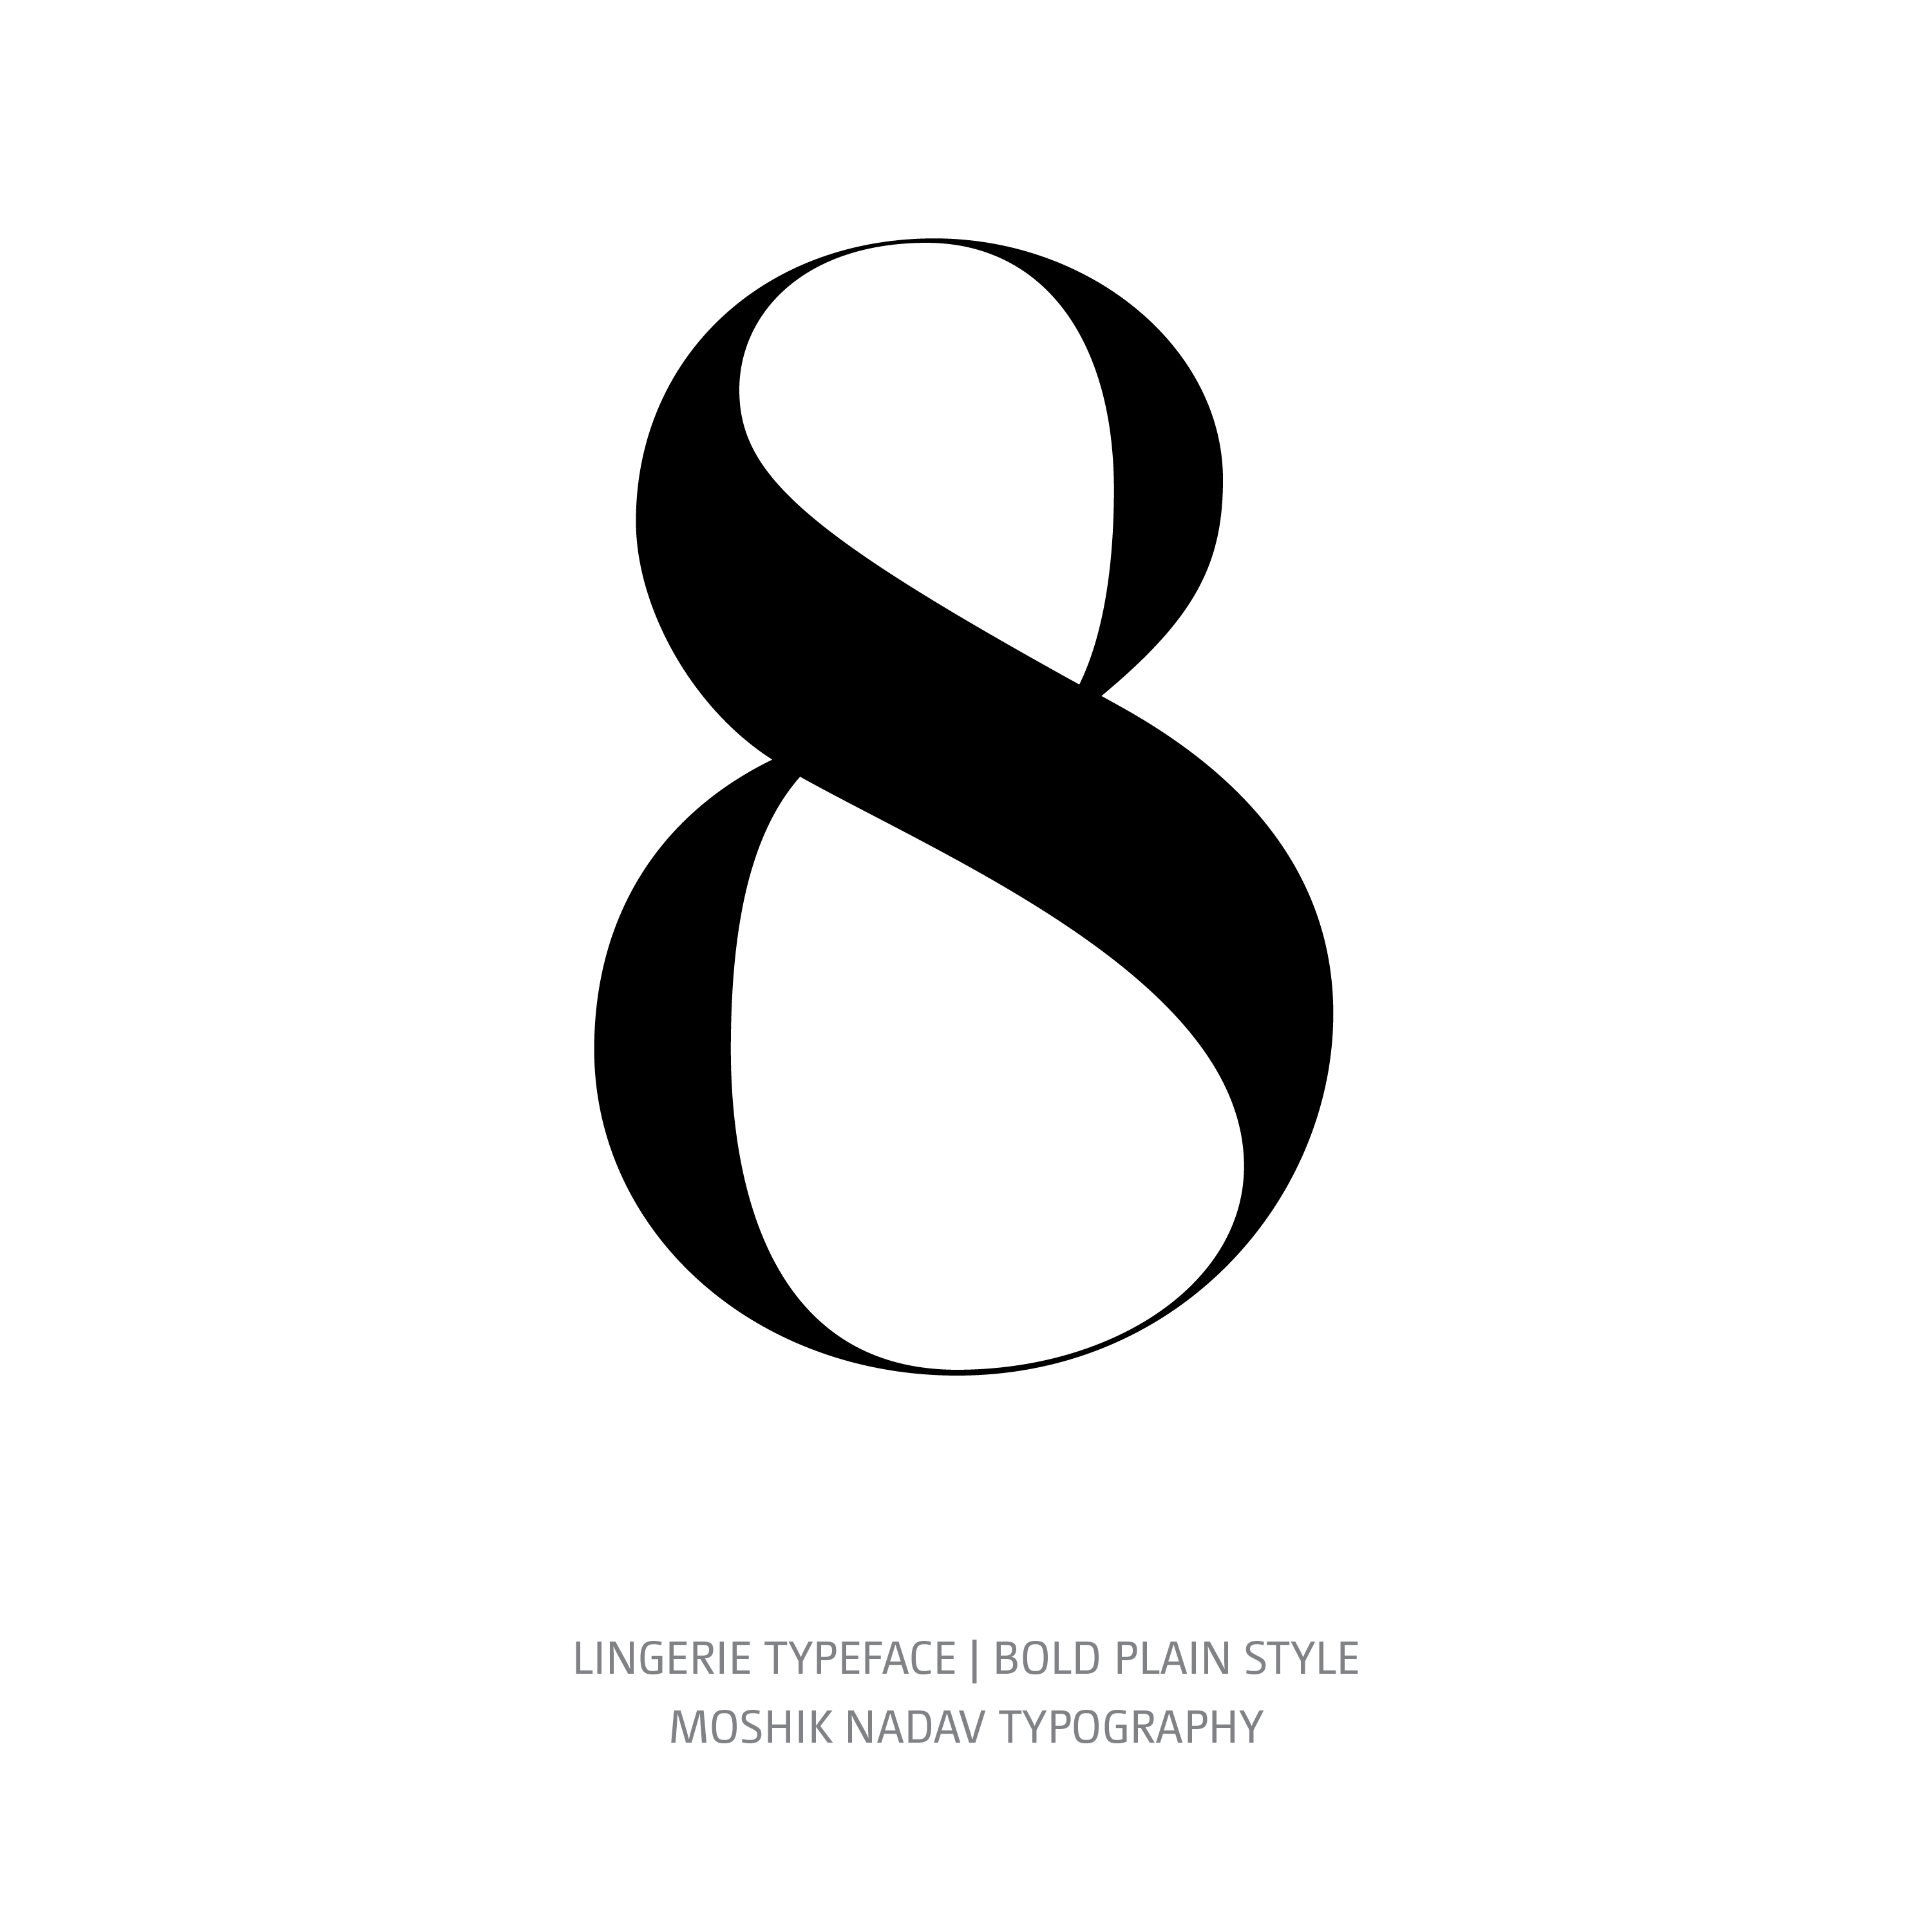 Lingerie Typeface Bold Plain 8